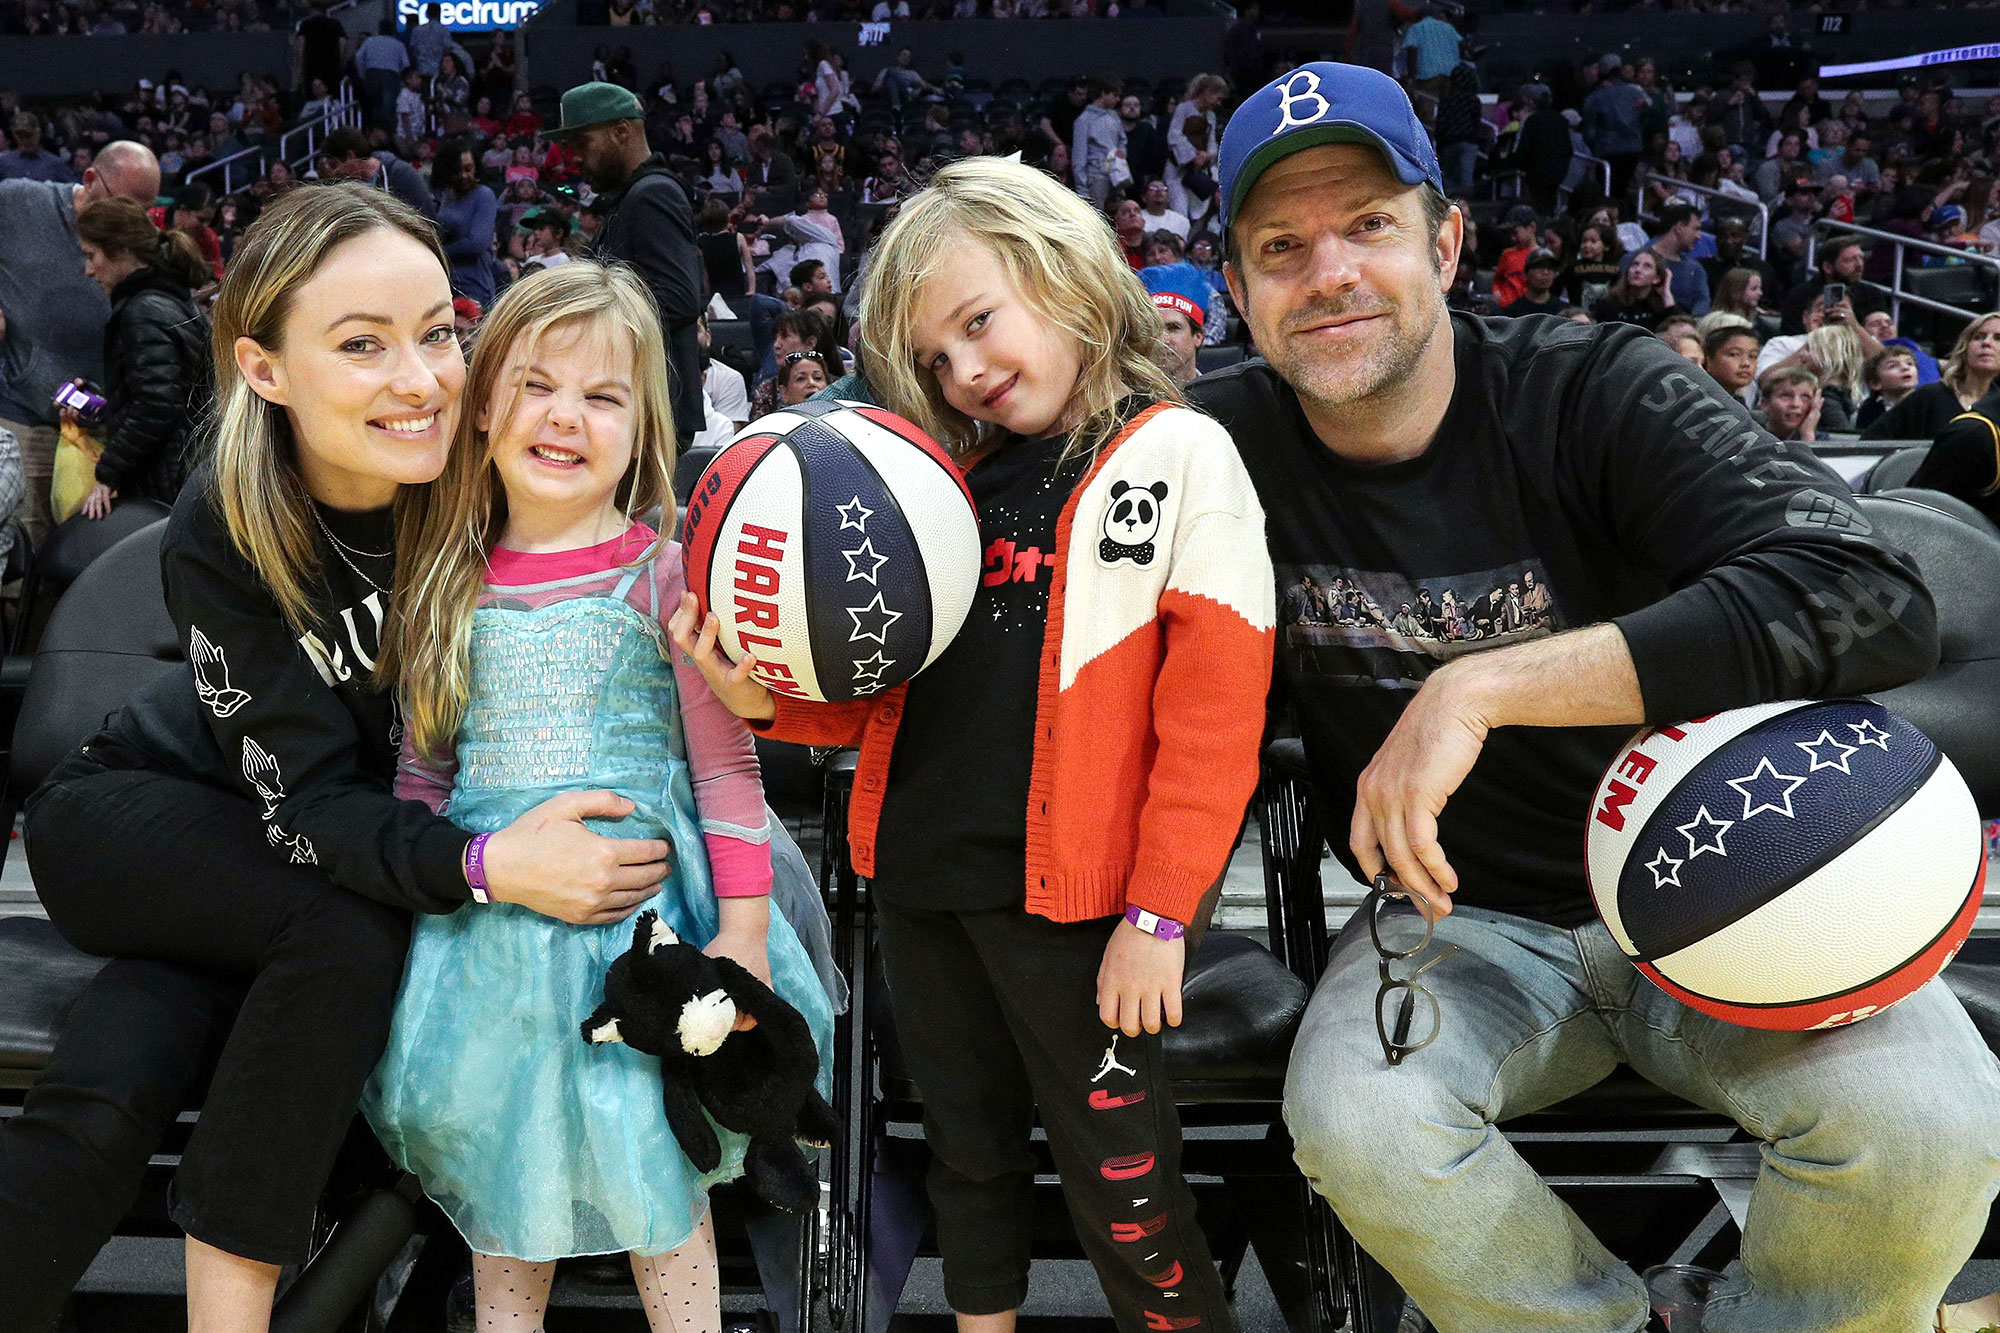 Jason Sudeikis, Olivia Wilde's Family Pics With 2 Kids